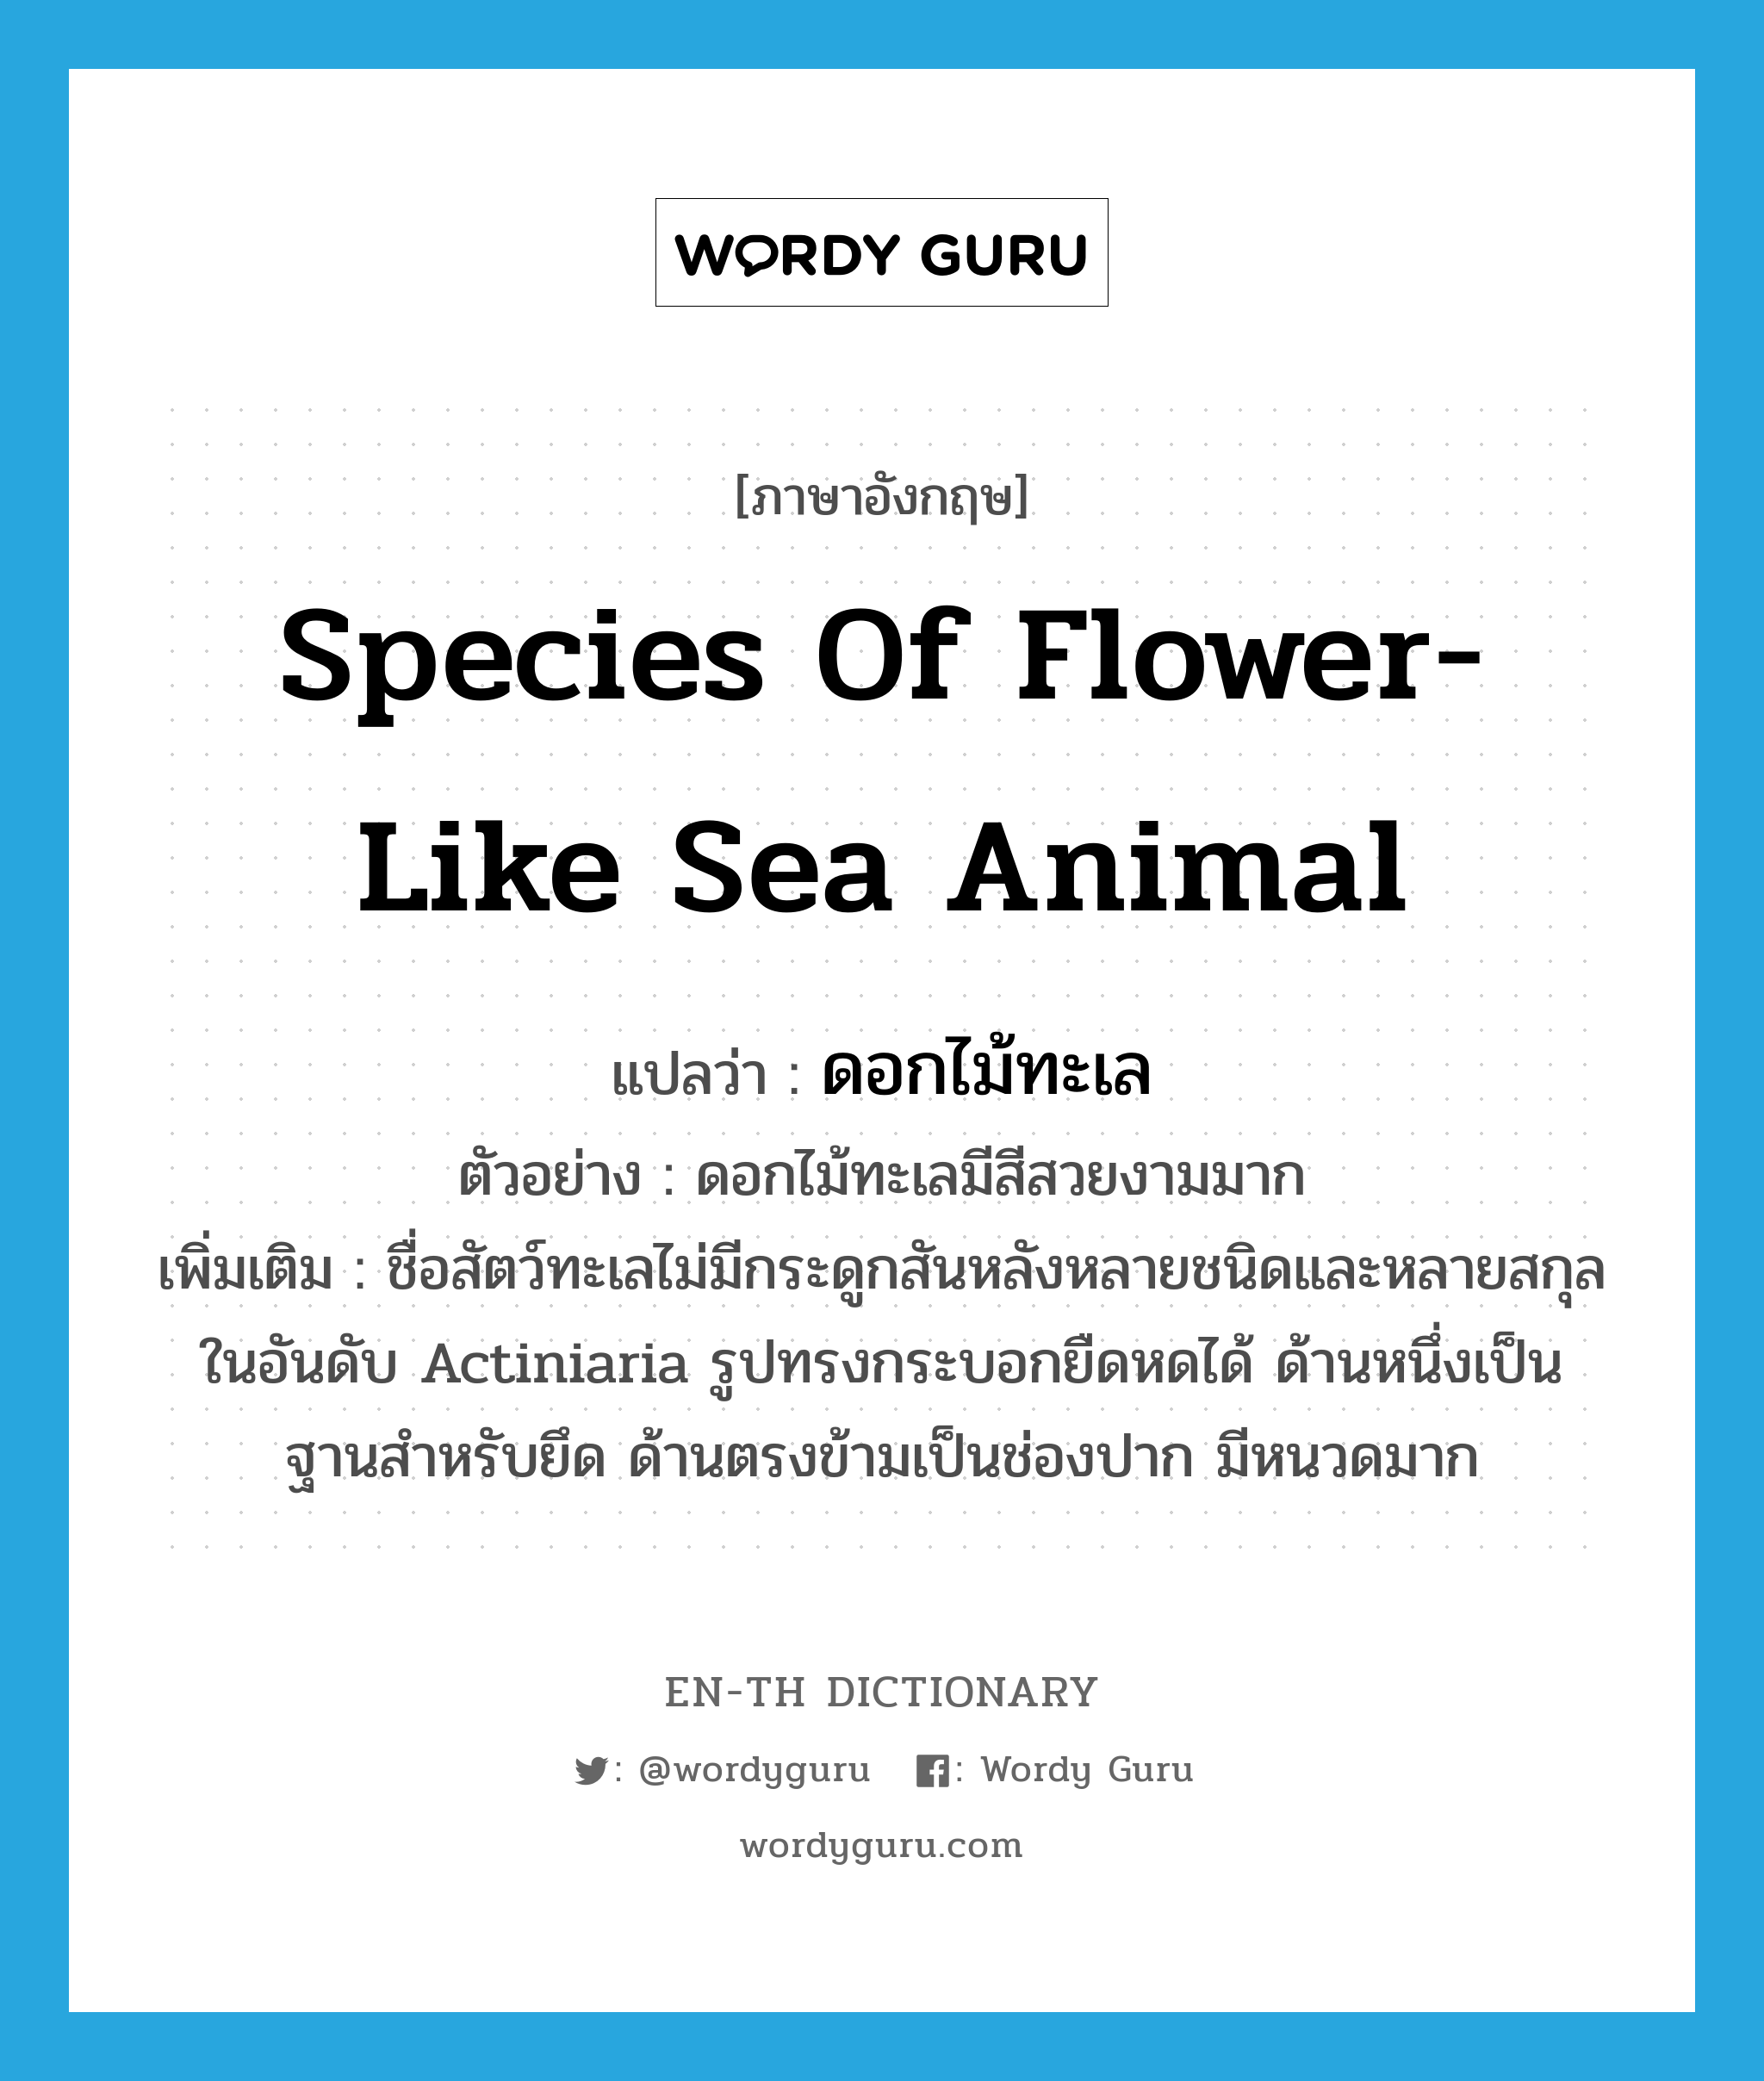 species of flower-like sea animal แปลว่า?, คำศัพท์ภาษาอังกฤษ species of flower-like sea animal แปลว่า ดอกไม้ทะเล ประเภท N ตัวอย่าง ดอกไม้ทะเลมีสีสวยงามมาก เพิ่มเติม ชื่อสัตว์ทะเลไม่มีกระดูกสันหลังหลายชนิดและหลายสกุล ในอันดับ Actiniaria รูปทรงกระบอกยืดหดได้ ด้านหนึ่งเป็นฐานสำหรับยึด ด้านตรงข้ามเป็นช่องปาก มีหนวดมาก หมวด N